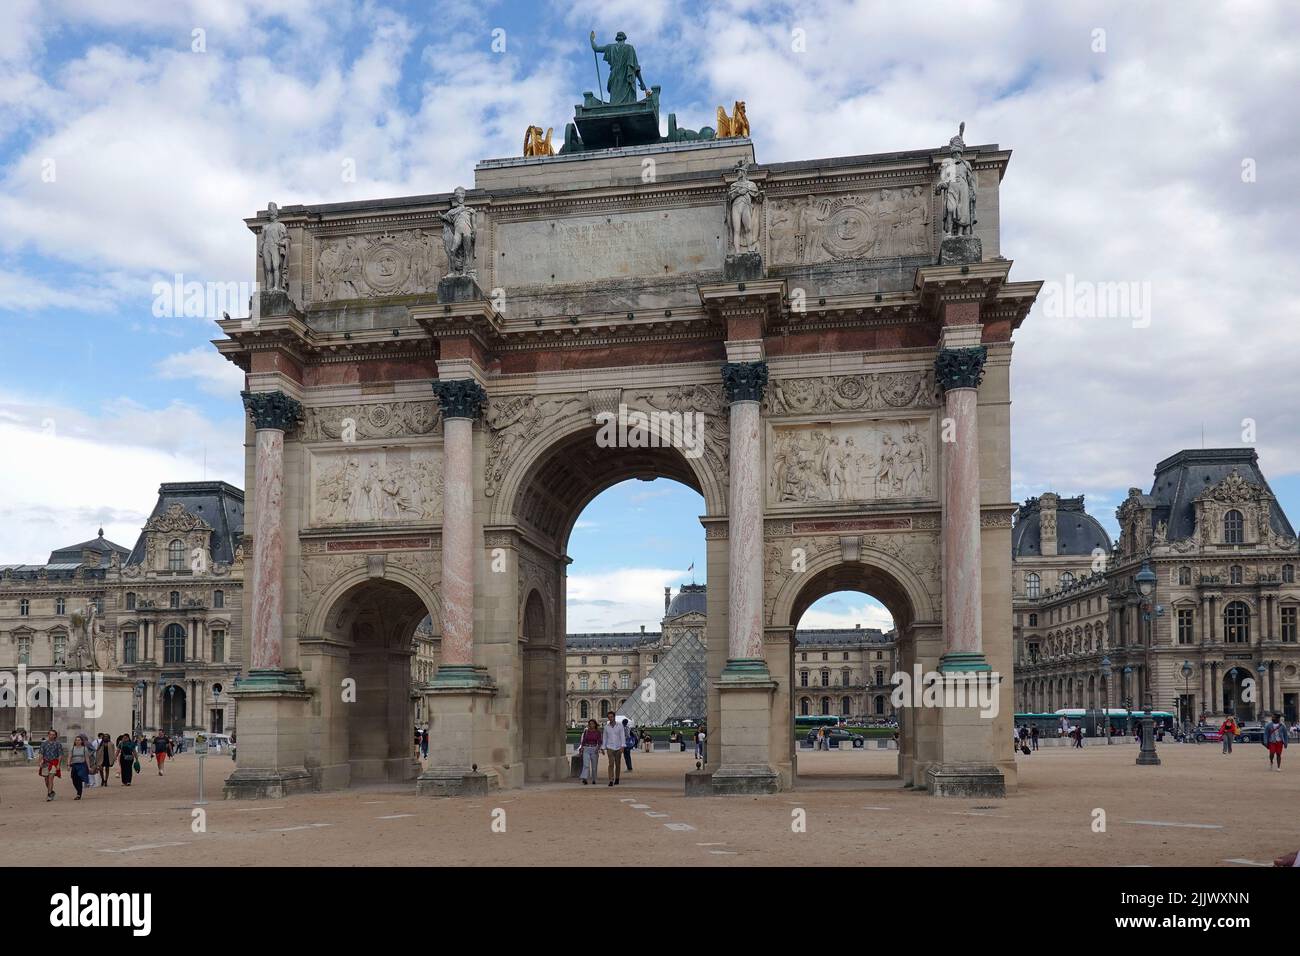 Francia, París, el Arco del Triunfo del Carrousel es un arco triunfal en París, situado en la Place du Carrousel. Es un ejemplo de arco neoclásico Foto de stock